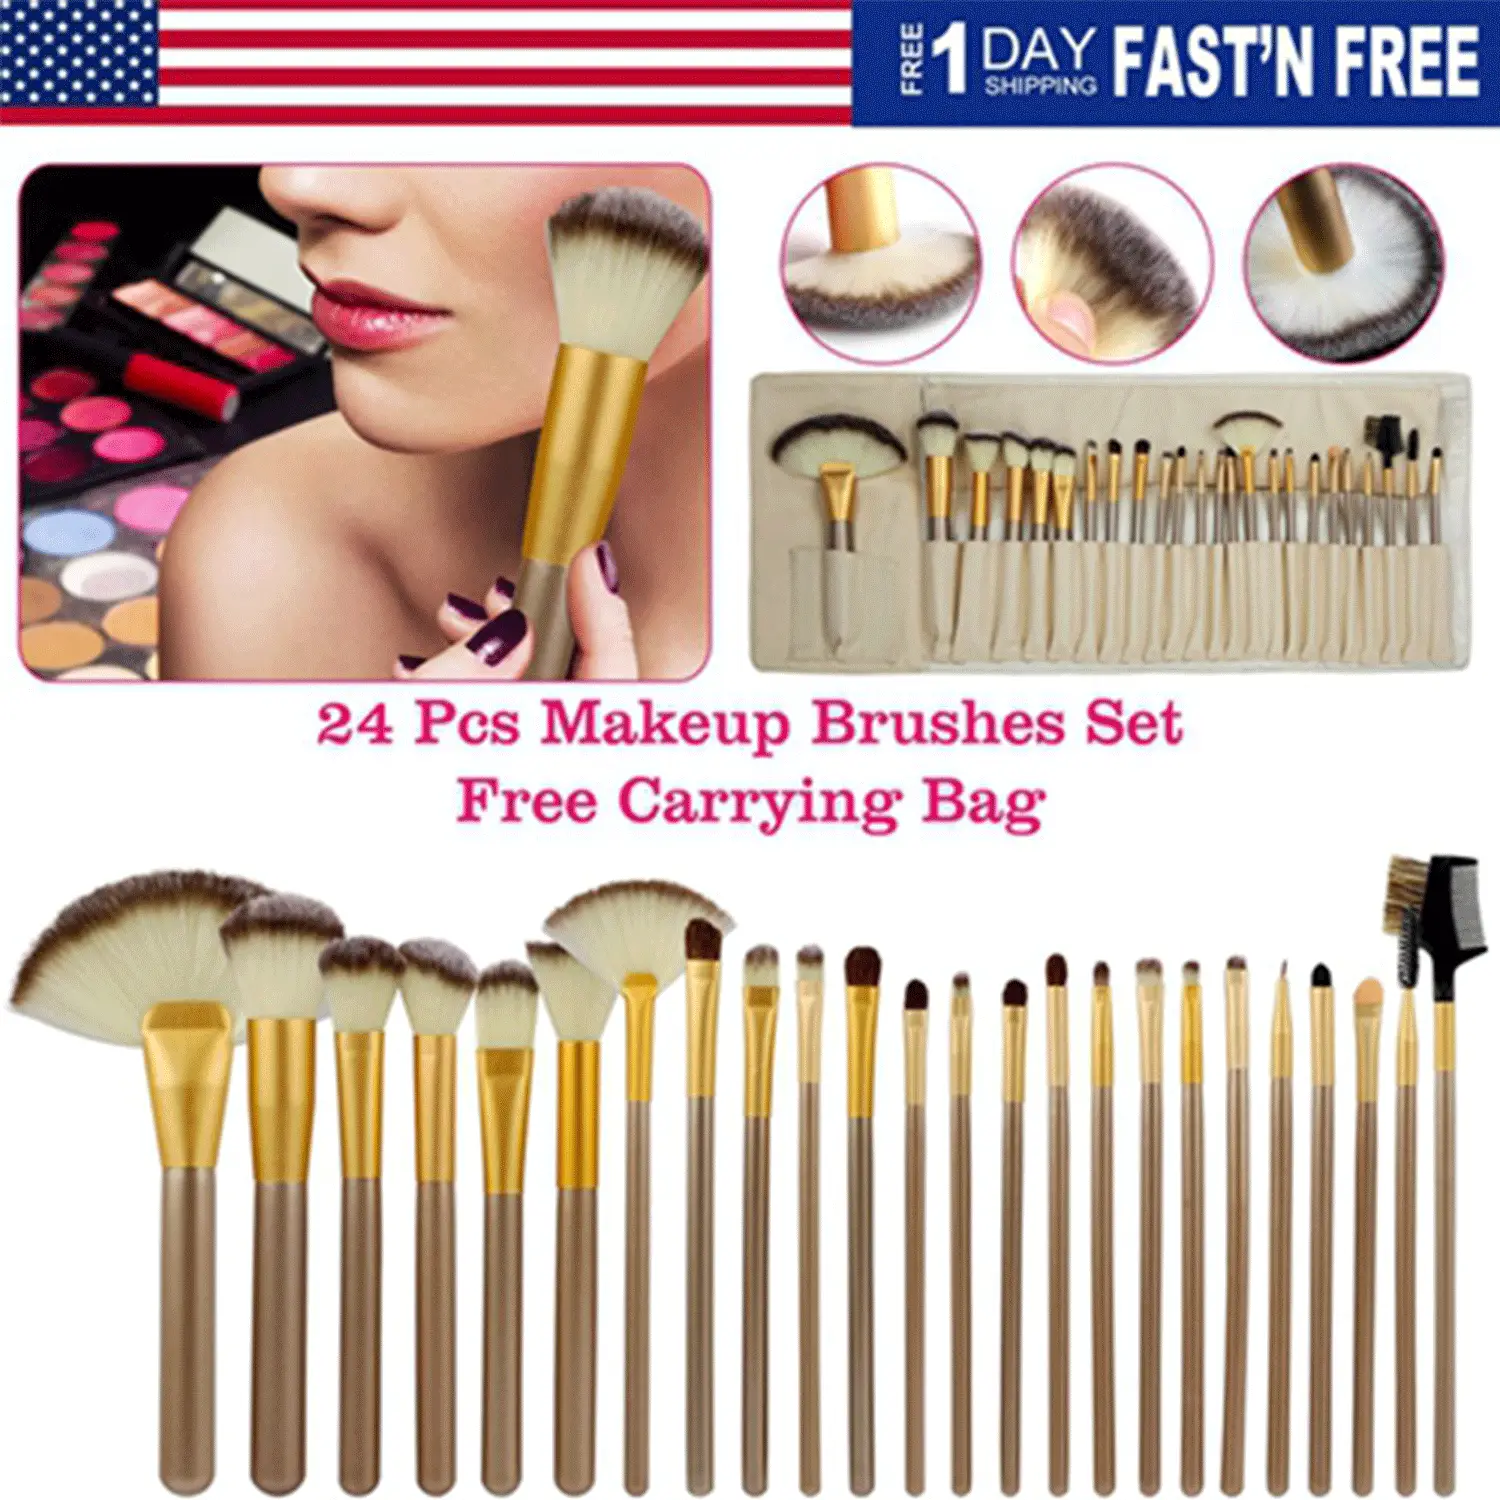 24-Piece Makeup Brushes Set